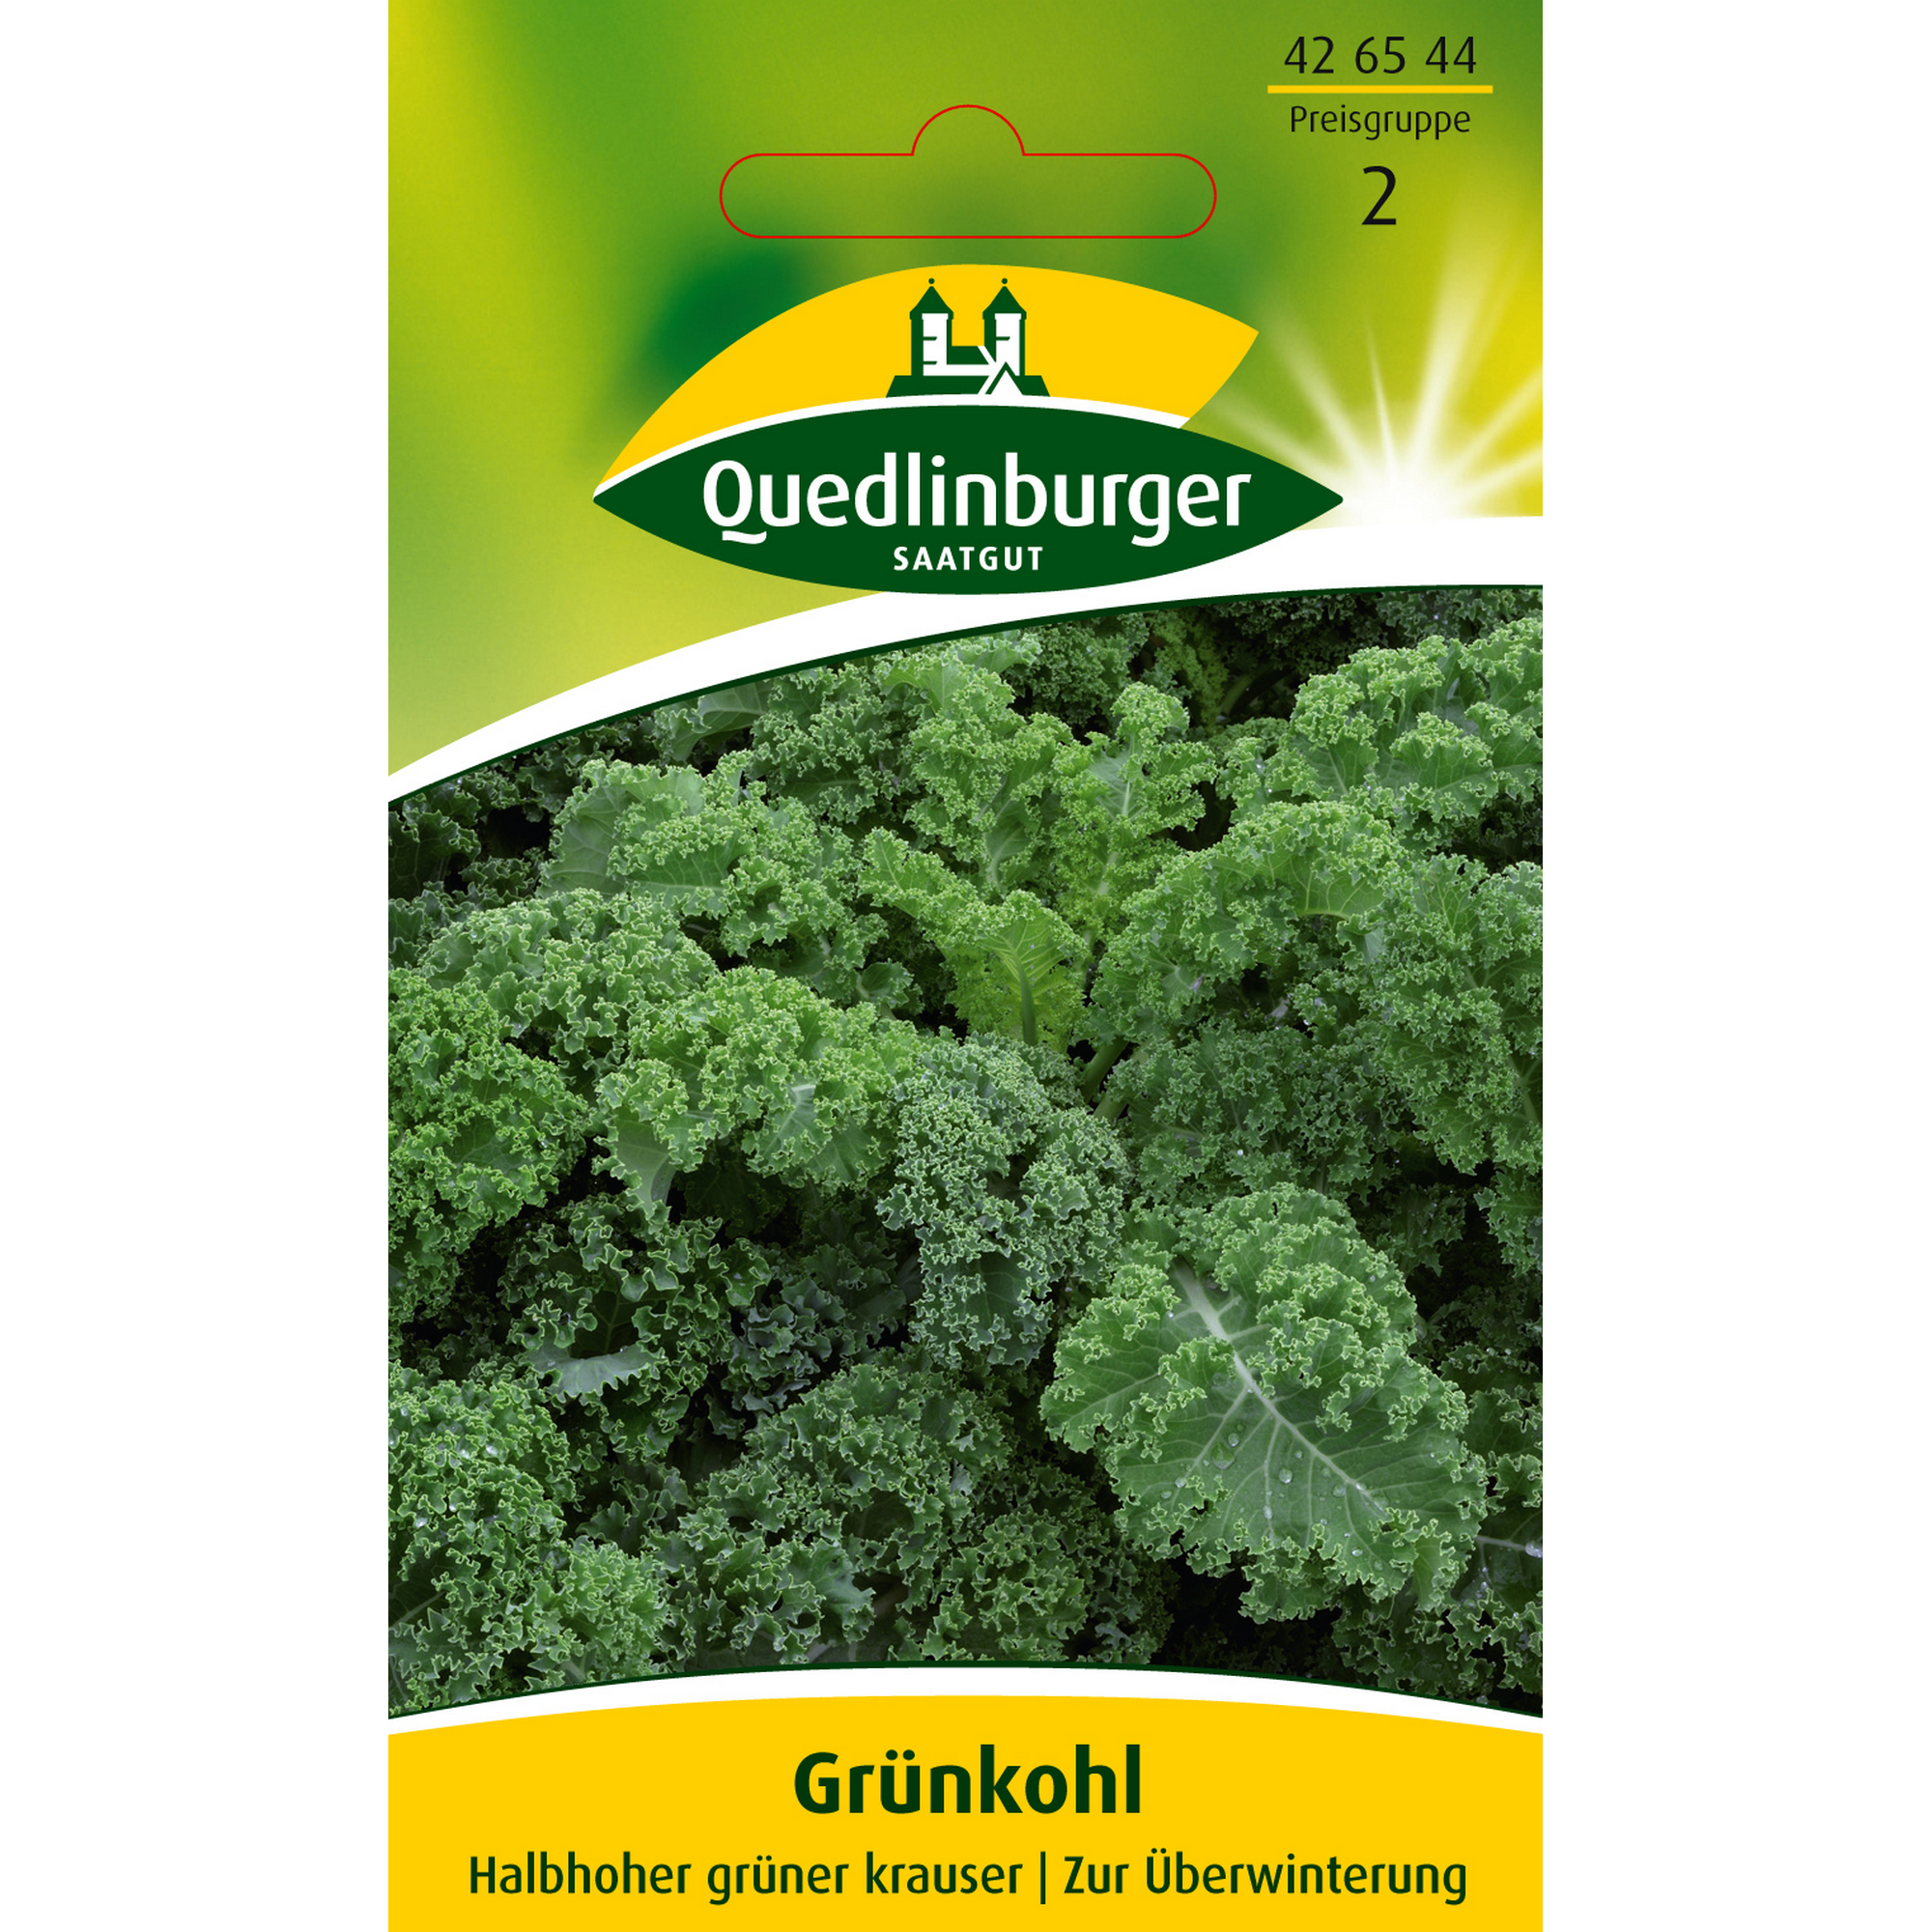 Grünkohl 'Halbhoher grüner krauser' + product picture